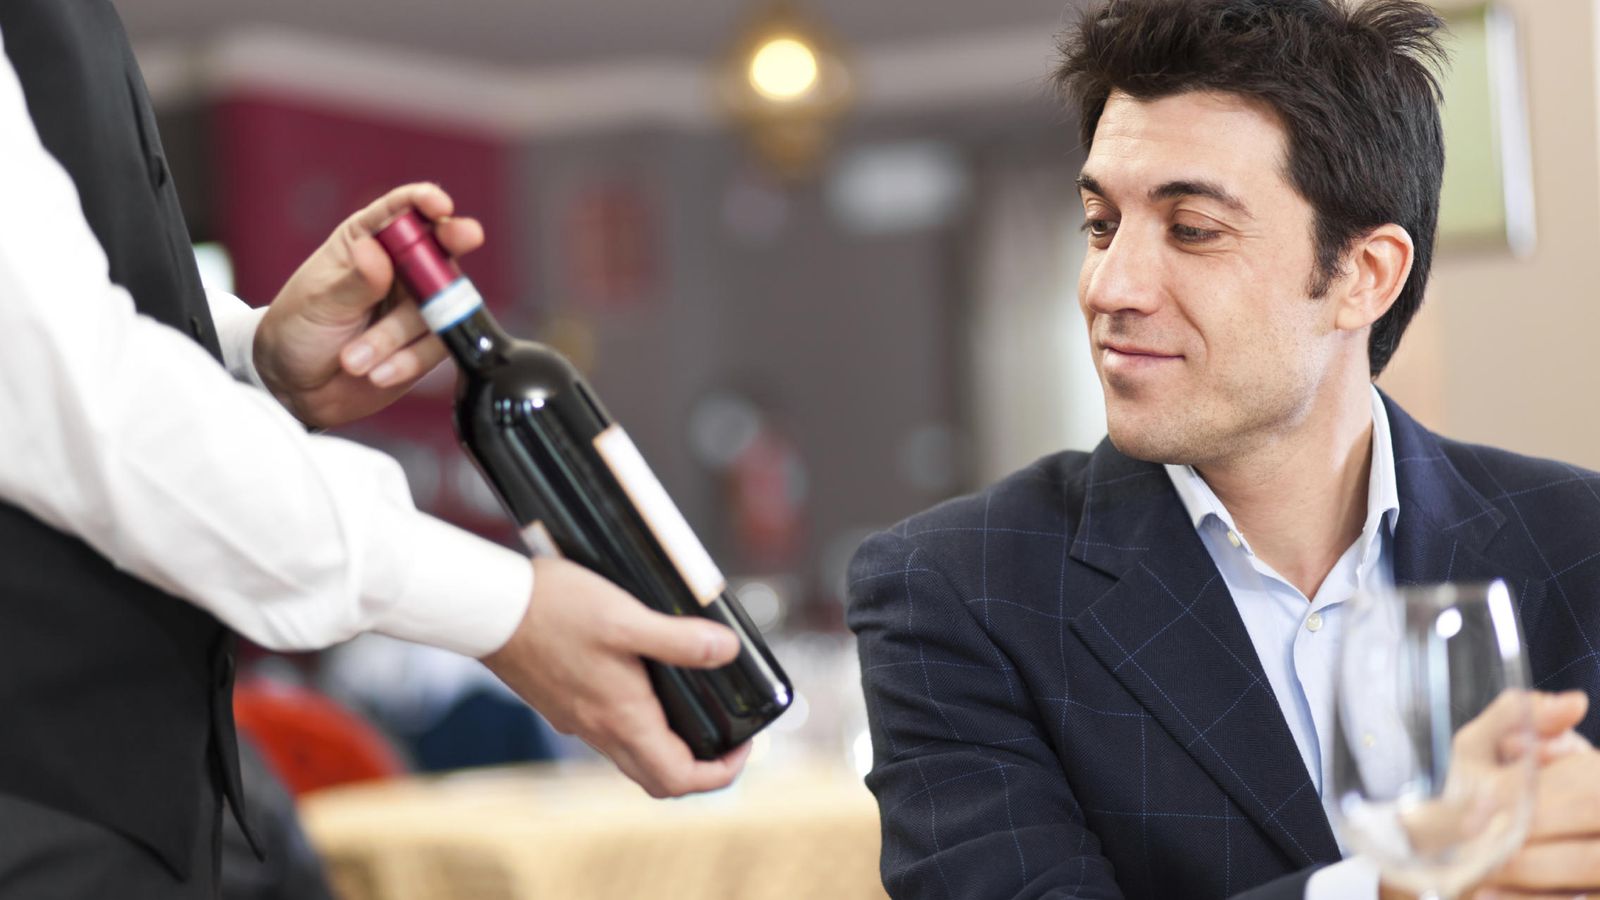 Foto: Un camarero muestra un vino al cliente. (iStock)